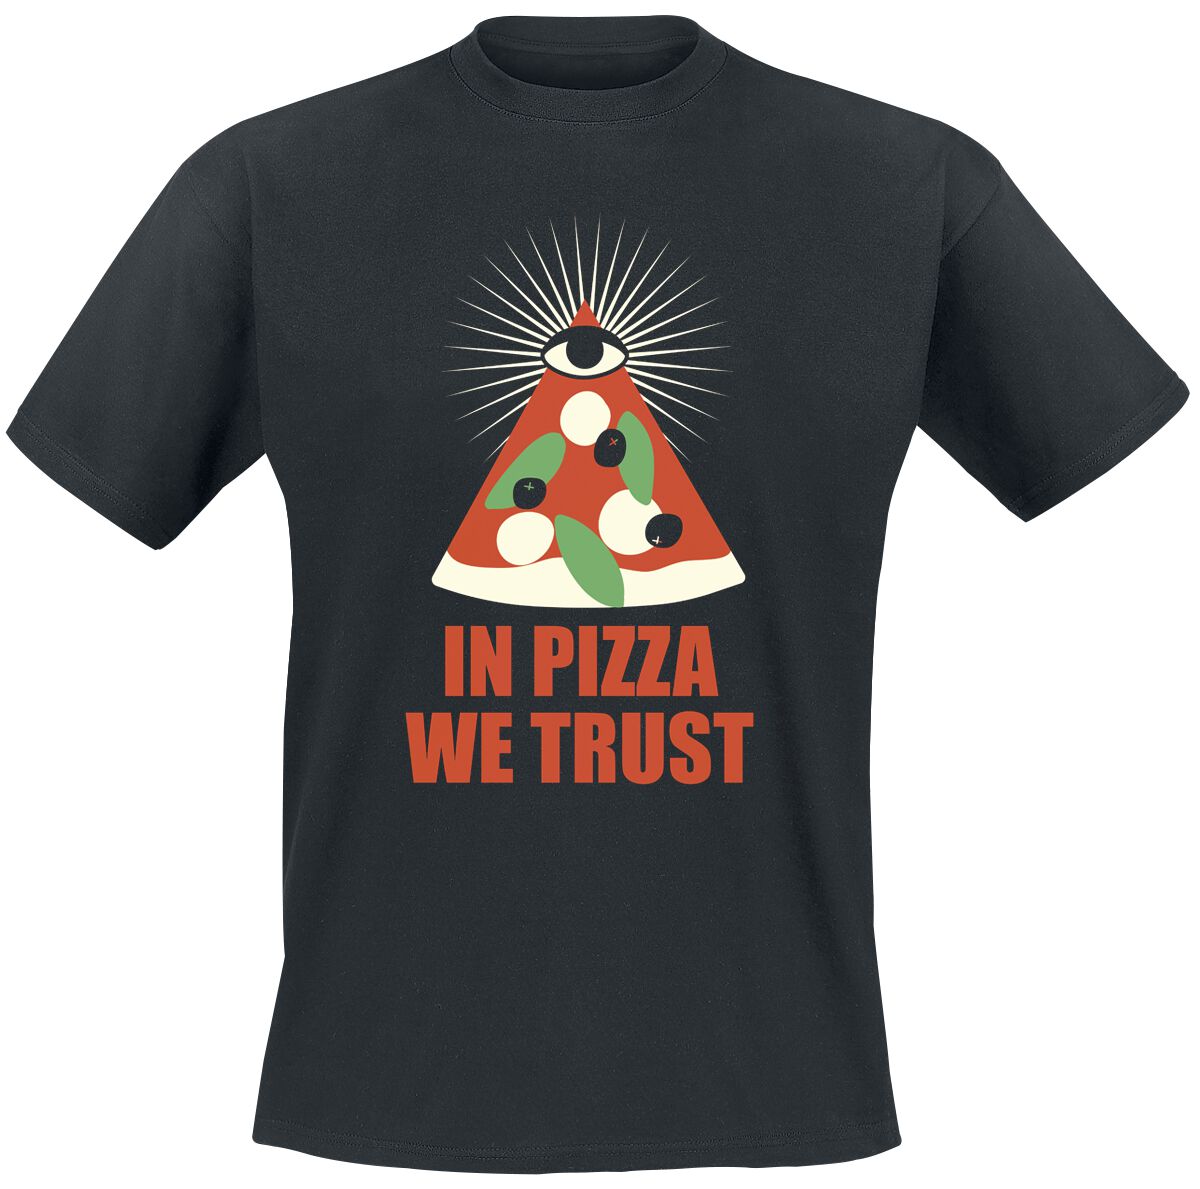 Food T-Shirt - In Pizza We Trust - M bis 3XL - für Männer - Größe 3XL - schwarz